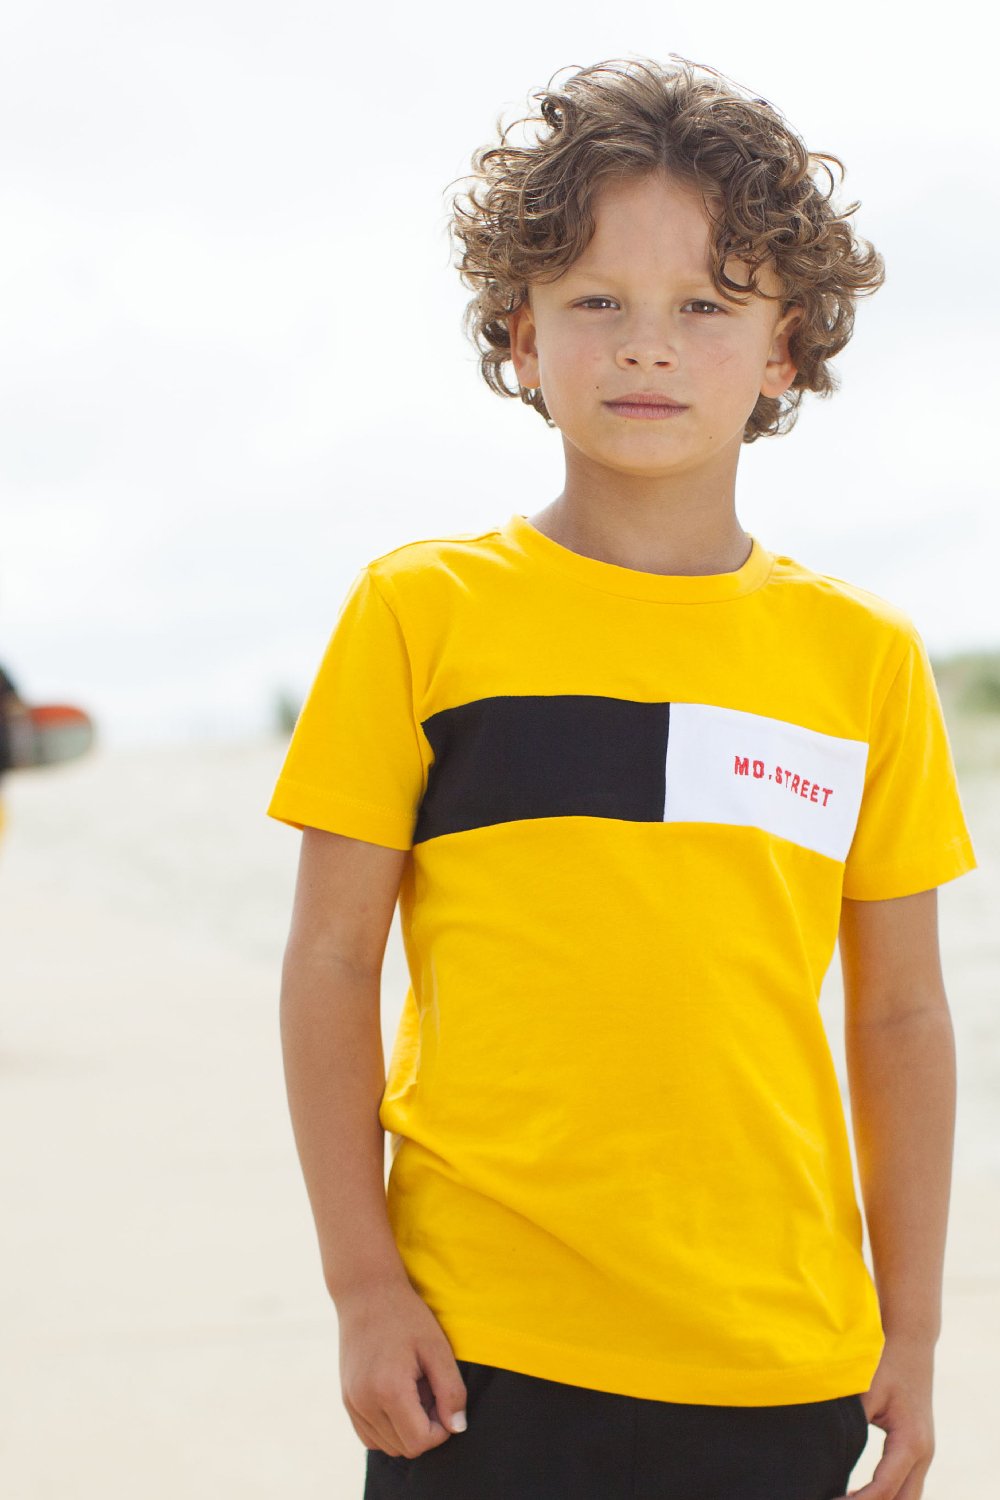 Jongens T-Shirt Contrast Stroke van Moodstreet in de kleur Dark Yellow in maat 122/128.